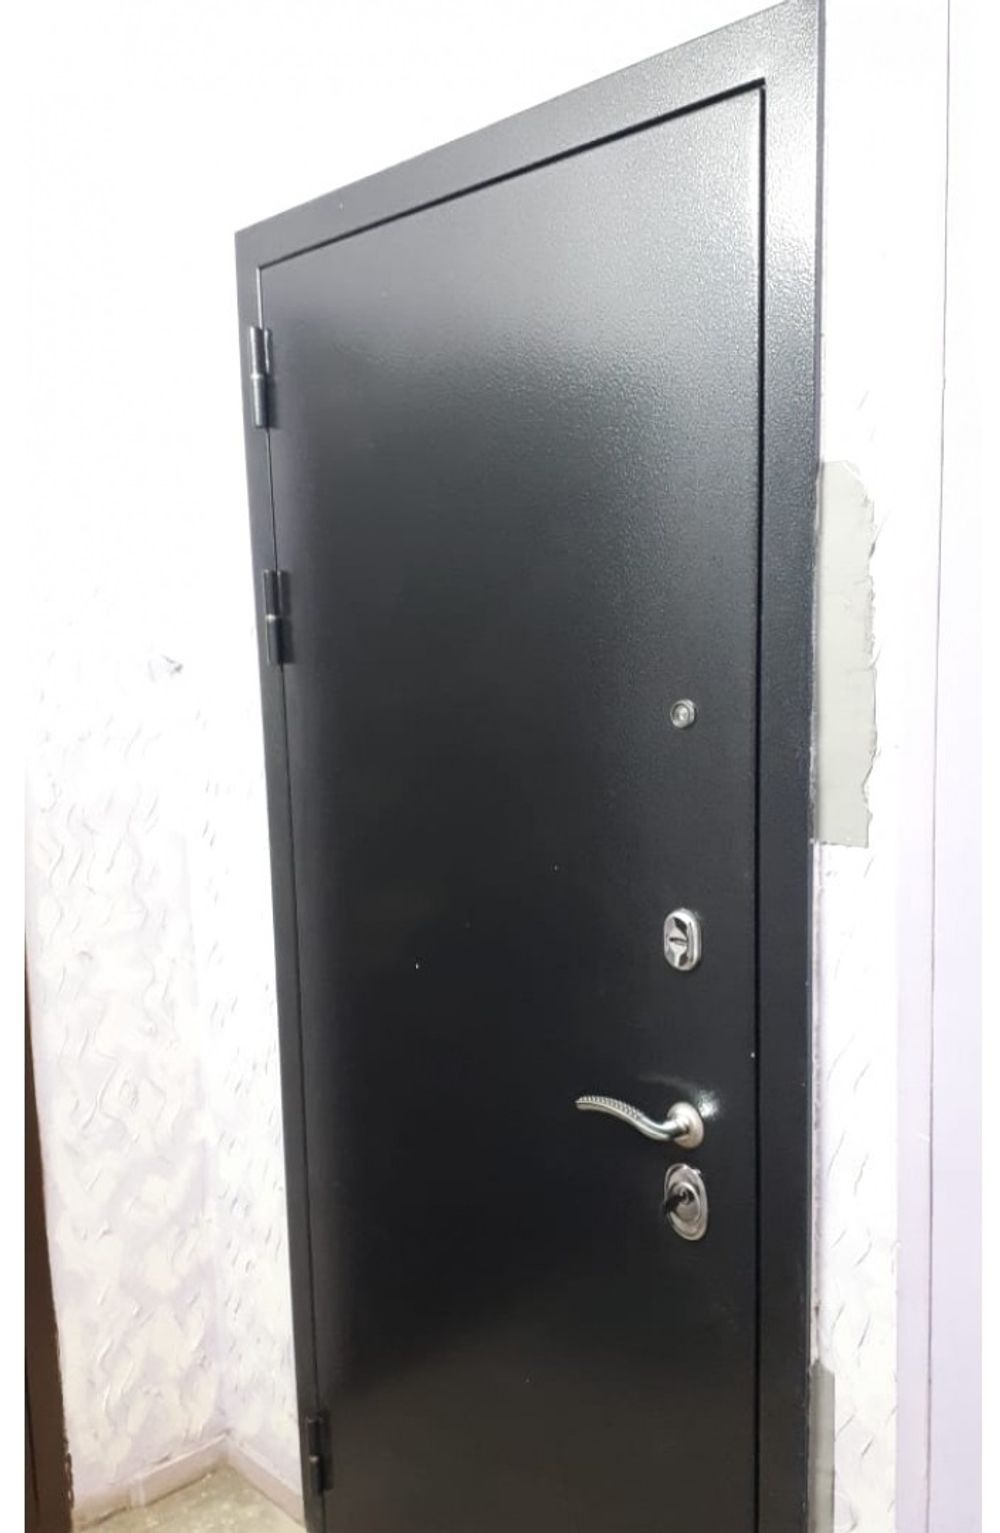 Входная металлическая дверь с зеркалом RеX (РЕКС) 11 Практик Антик серебро / ФЛЗ-120 Беленый дуб